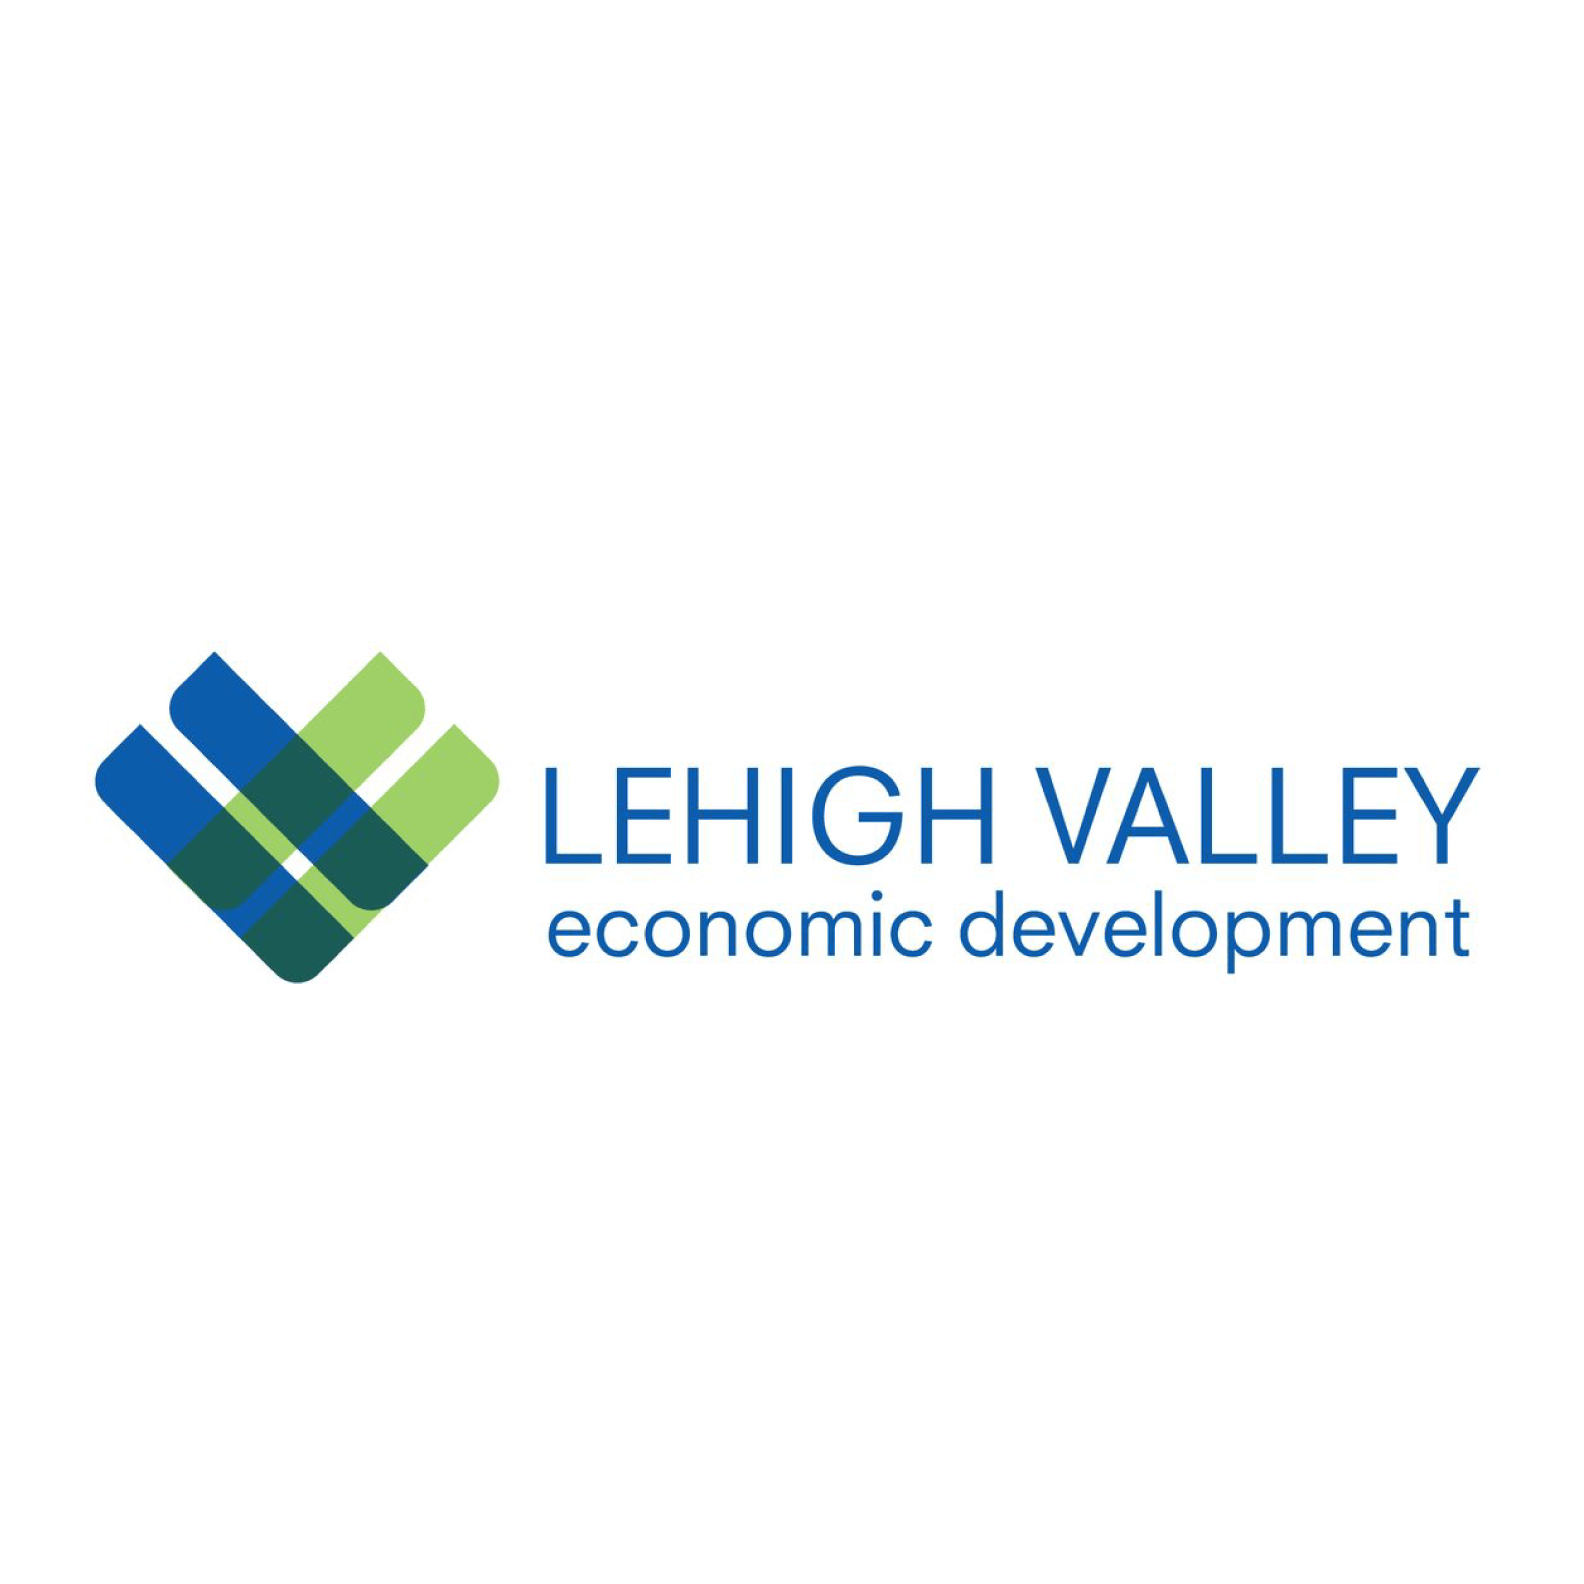 Lehigh Valley economic development